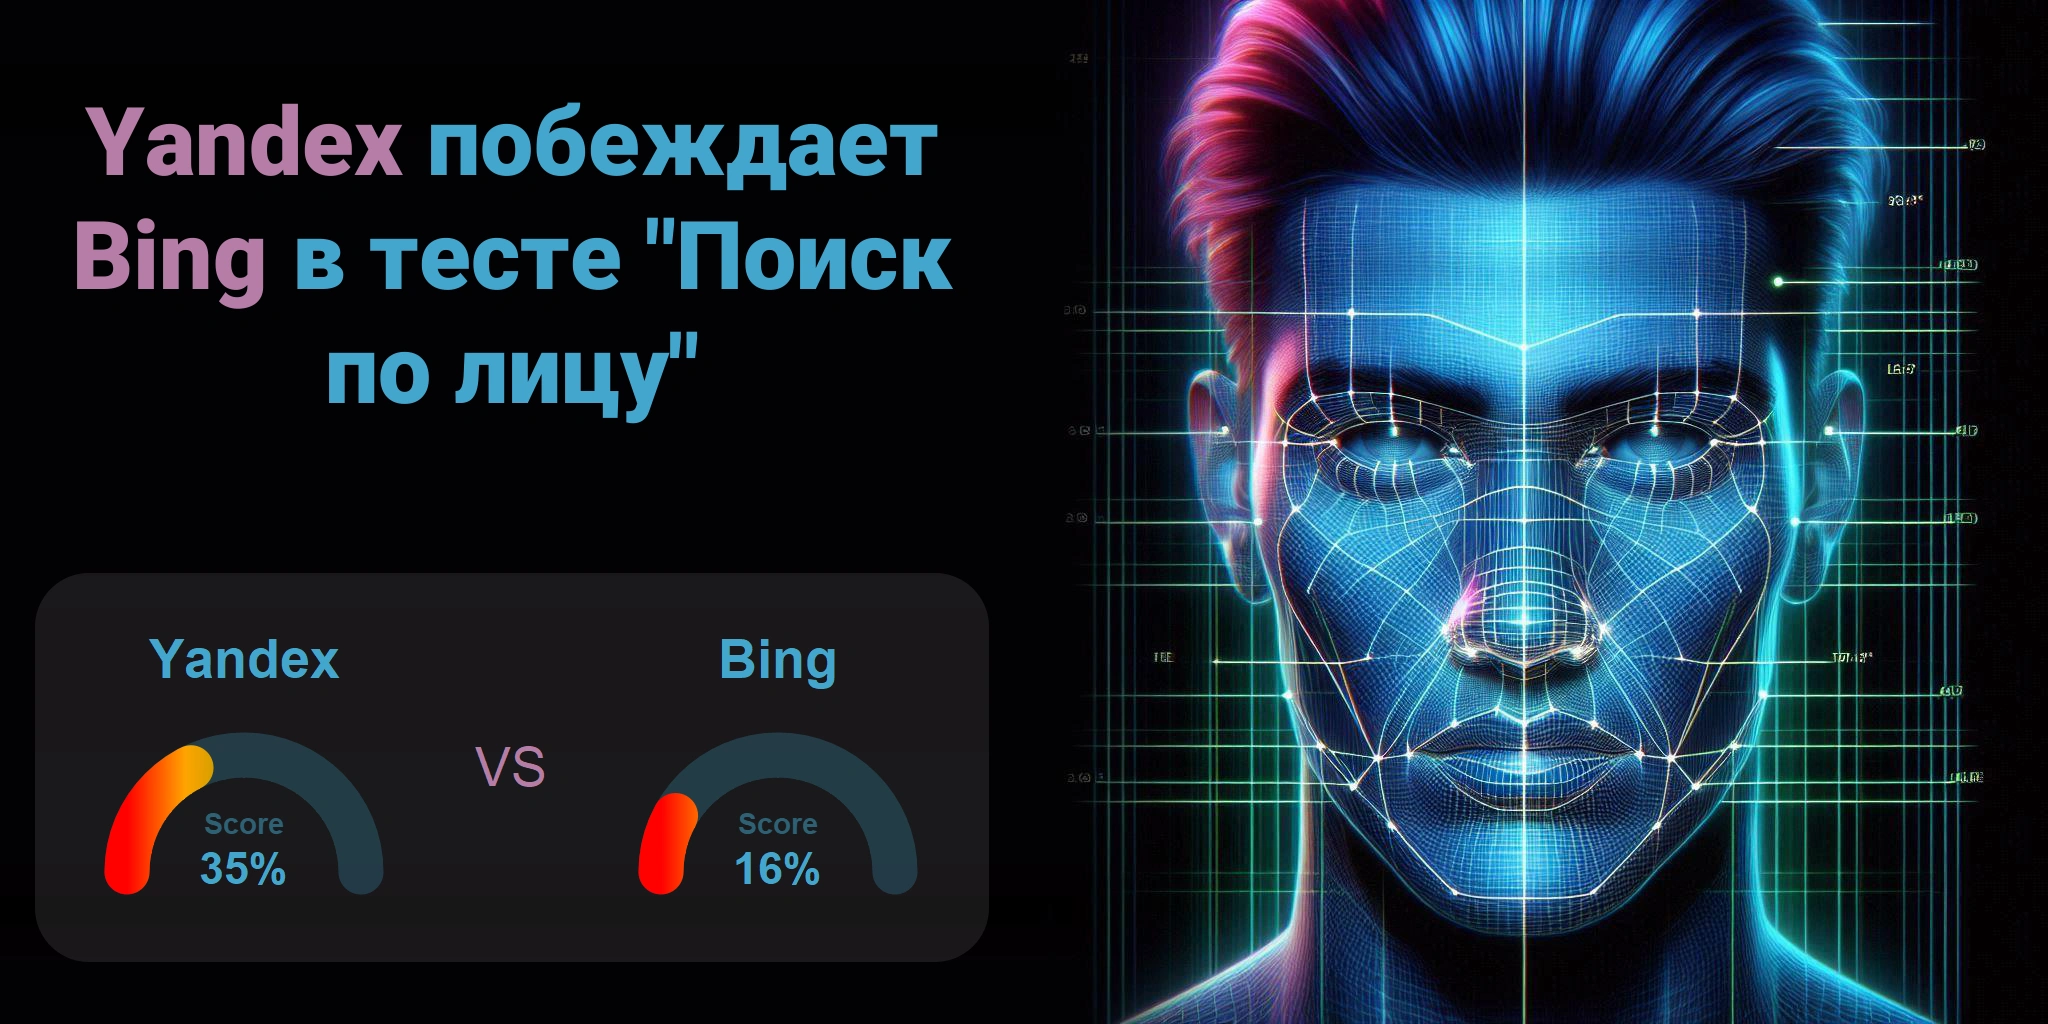 Что лучше для поиска по лицам: <br>Bing или Yandex?